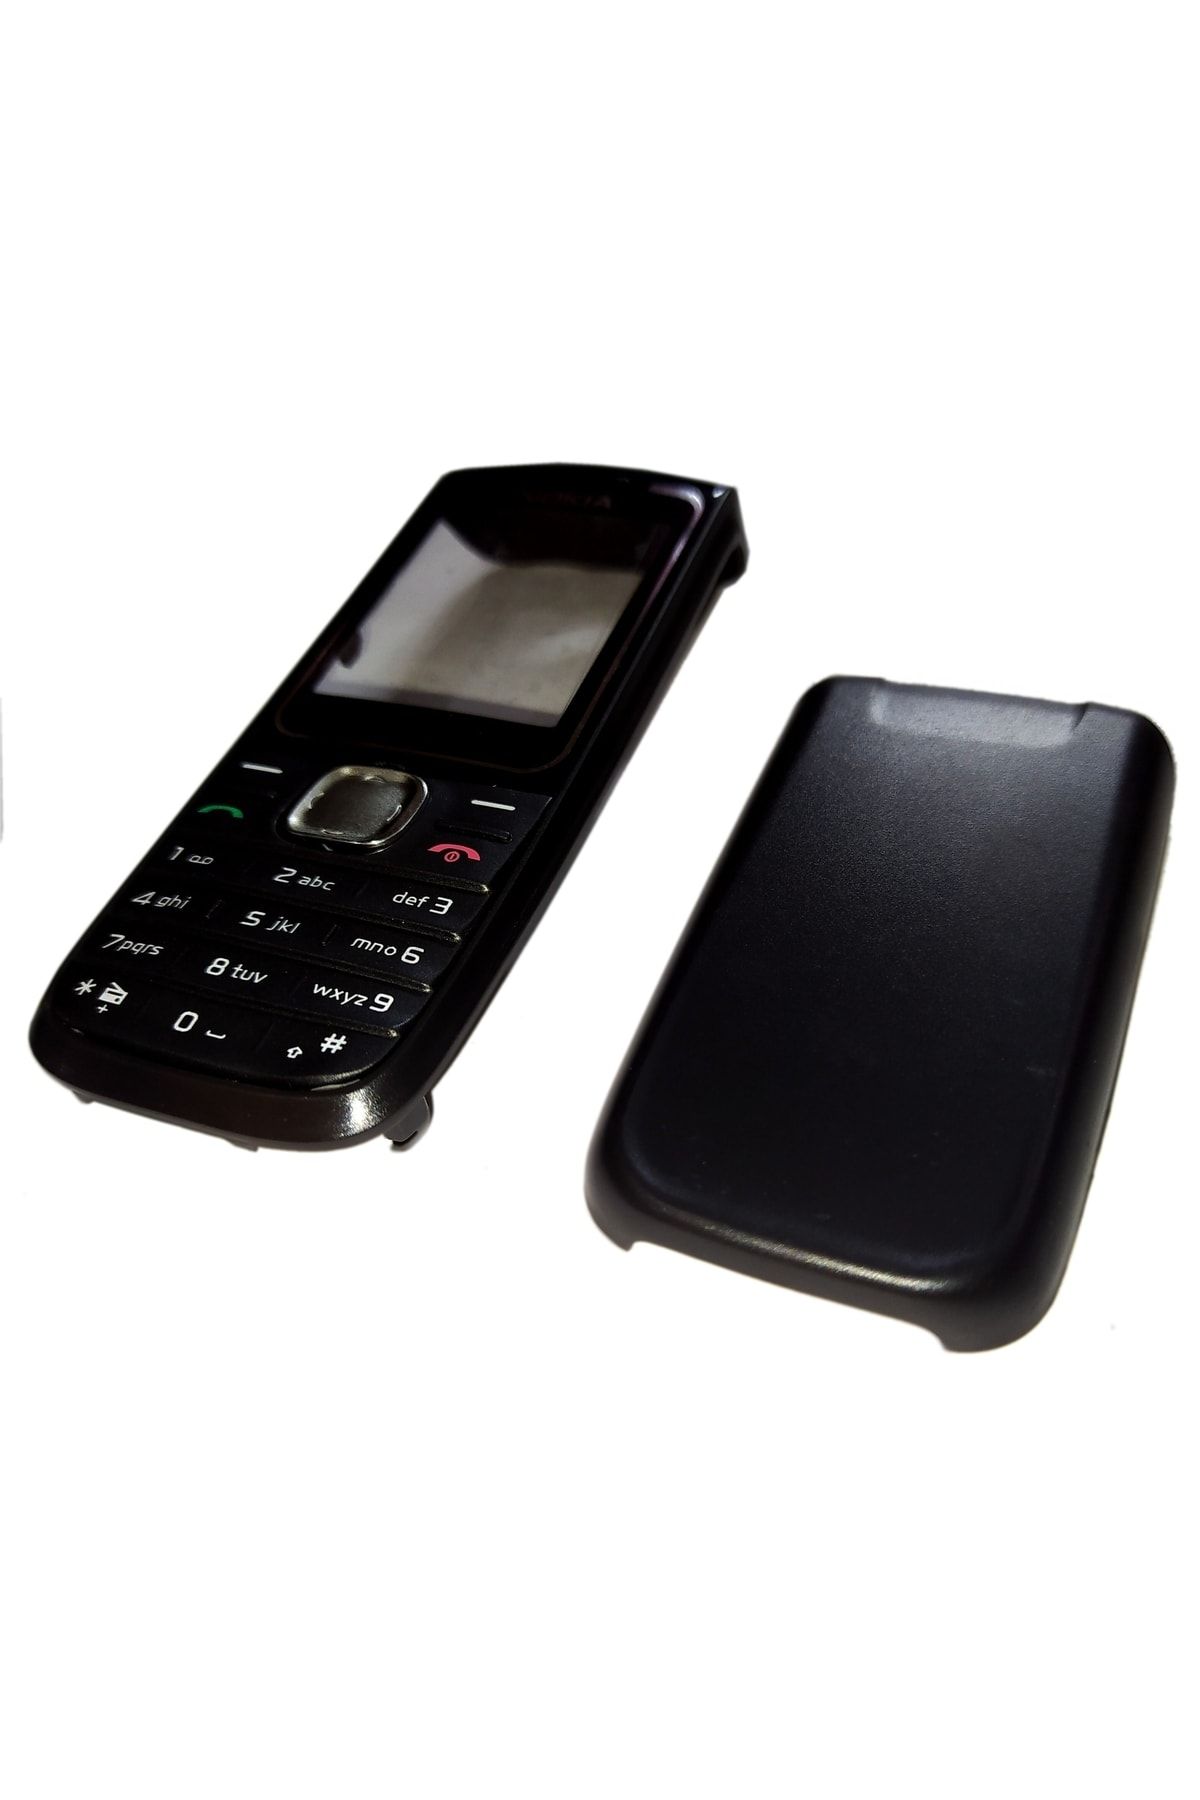 OEM Nokia 1650 Kapak Nokia 1650 Uyumlu Siyah Renk Ön Kapak Arka Kapak Tuş Takımı